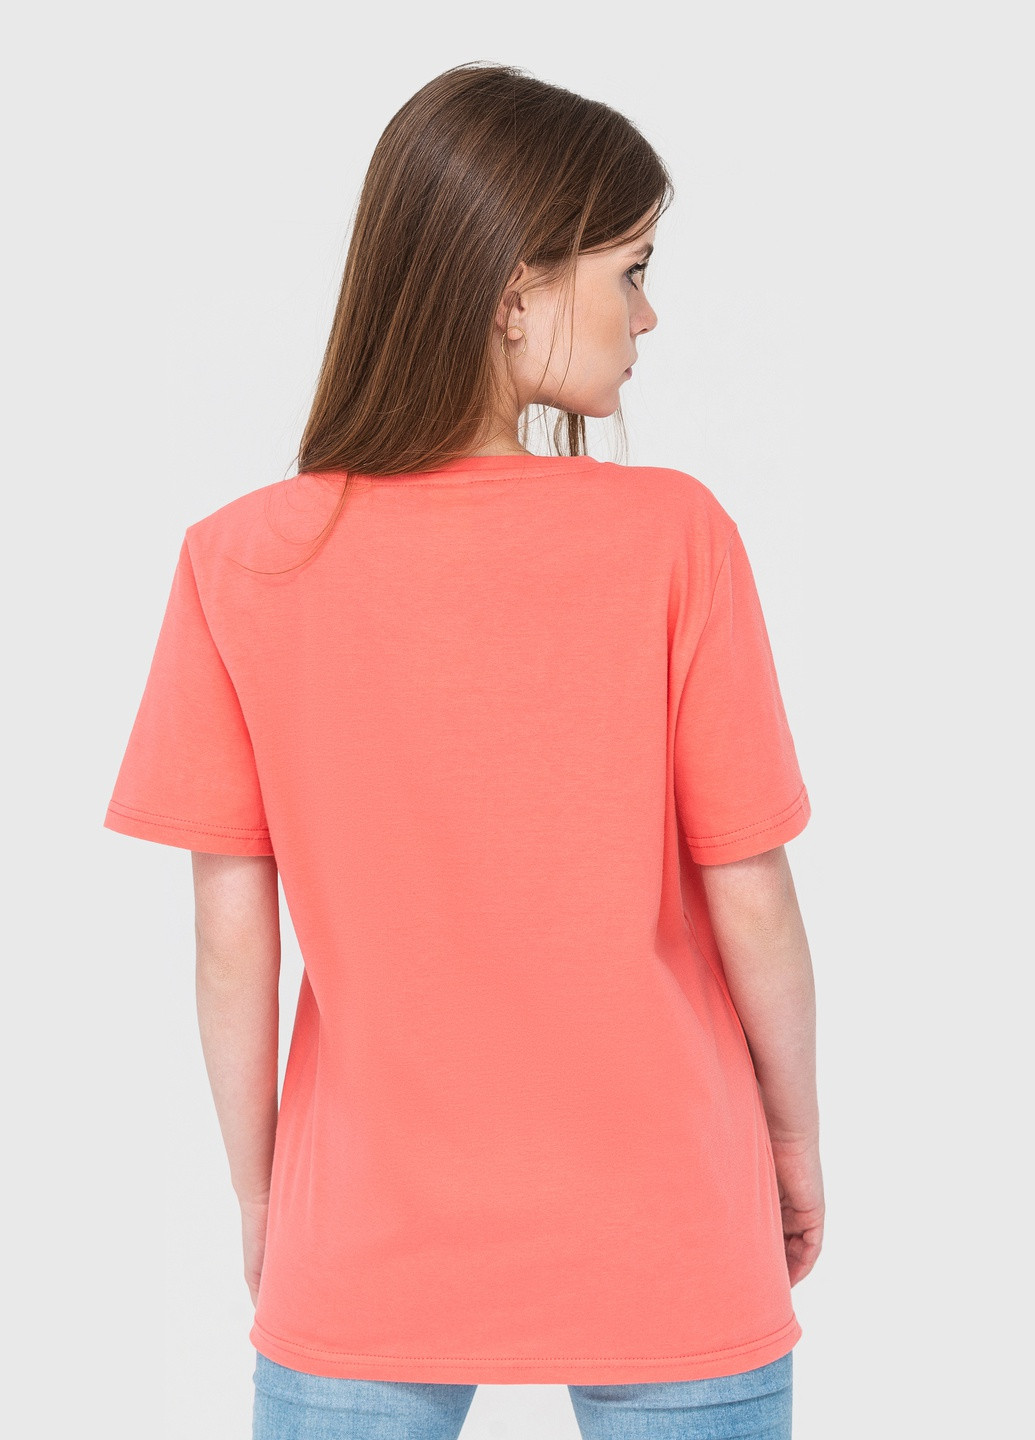 Коралловая летняя футболка женская с коротким рукавом Роза